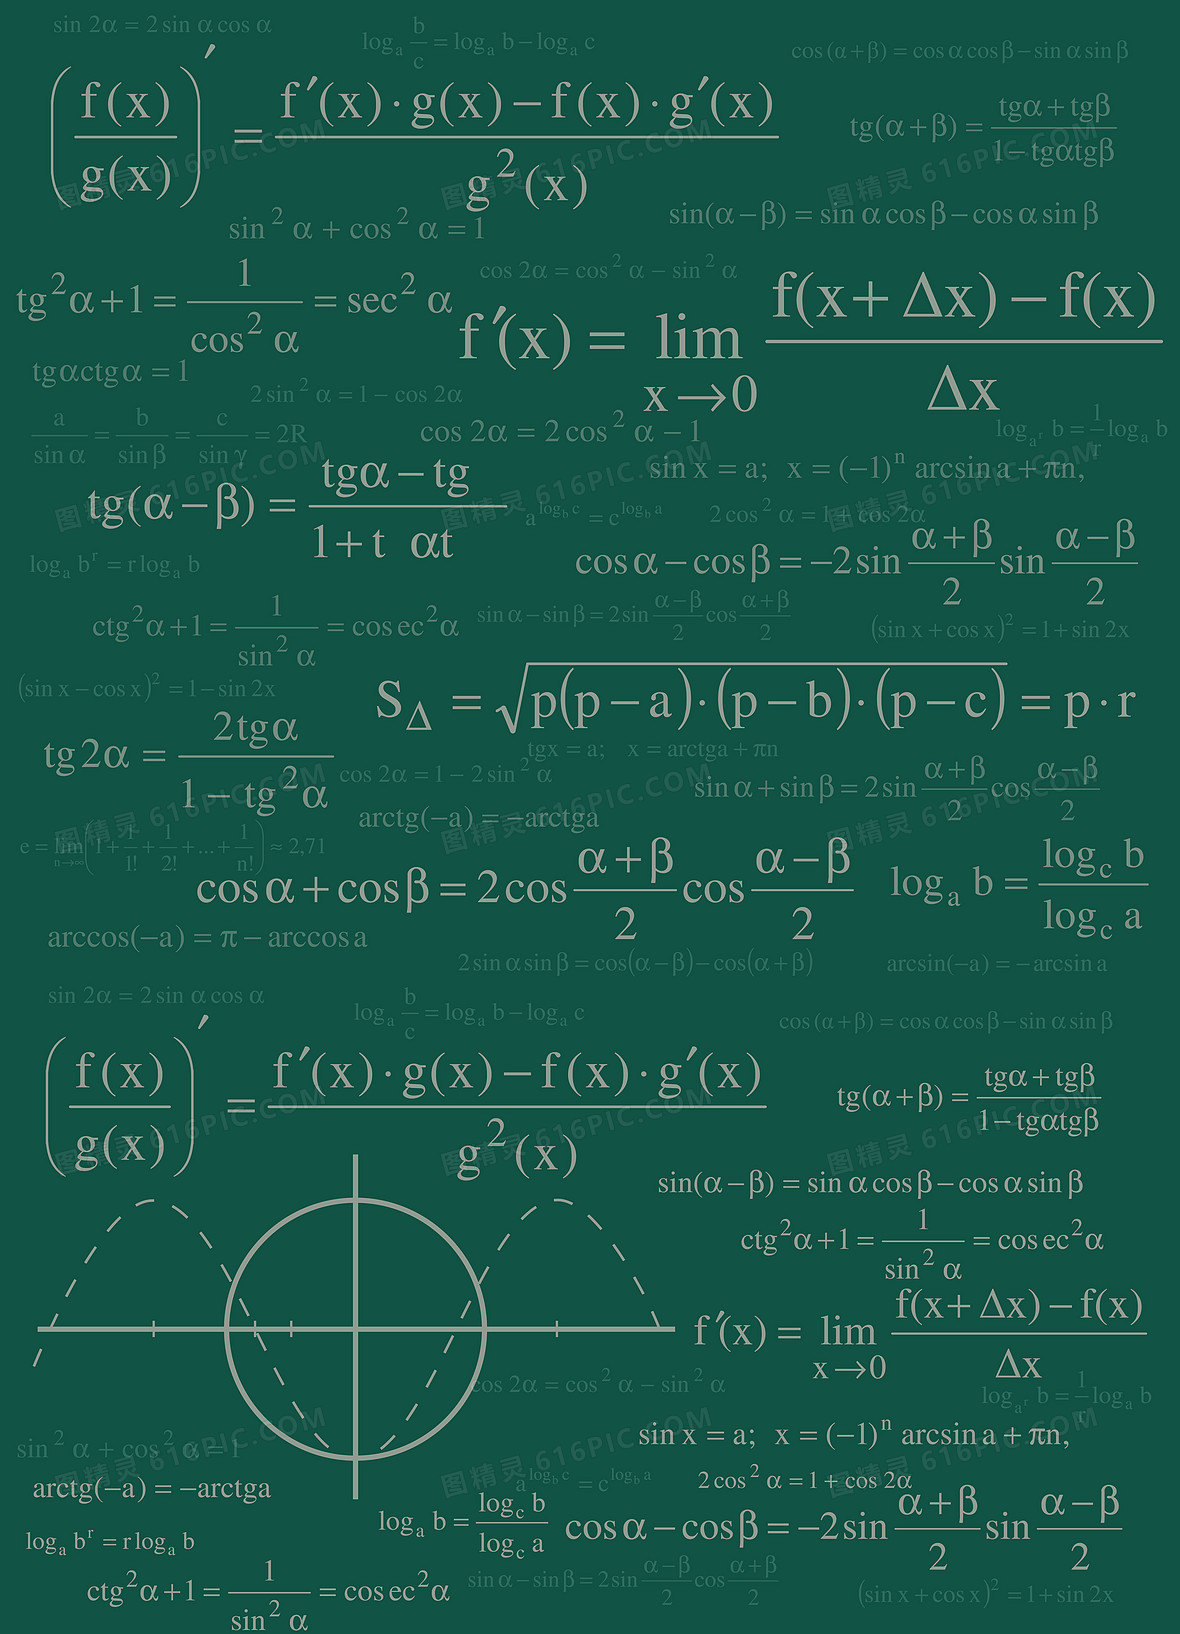 数学公式壁纸计数图片